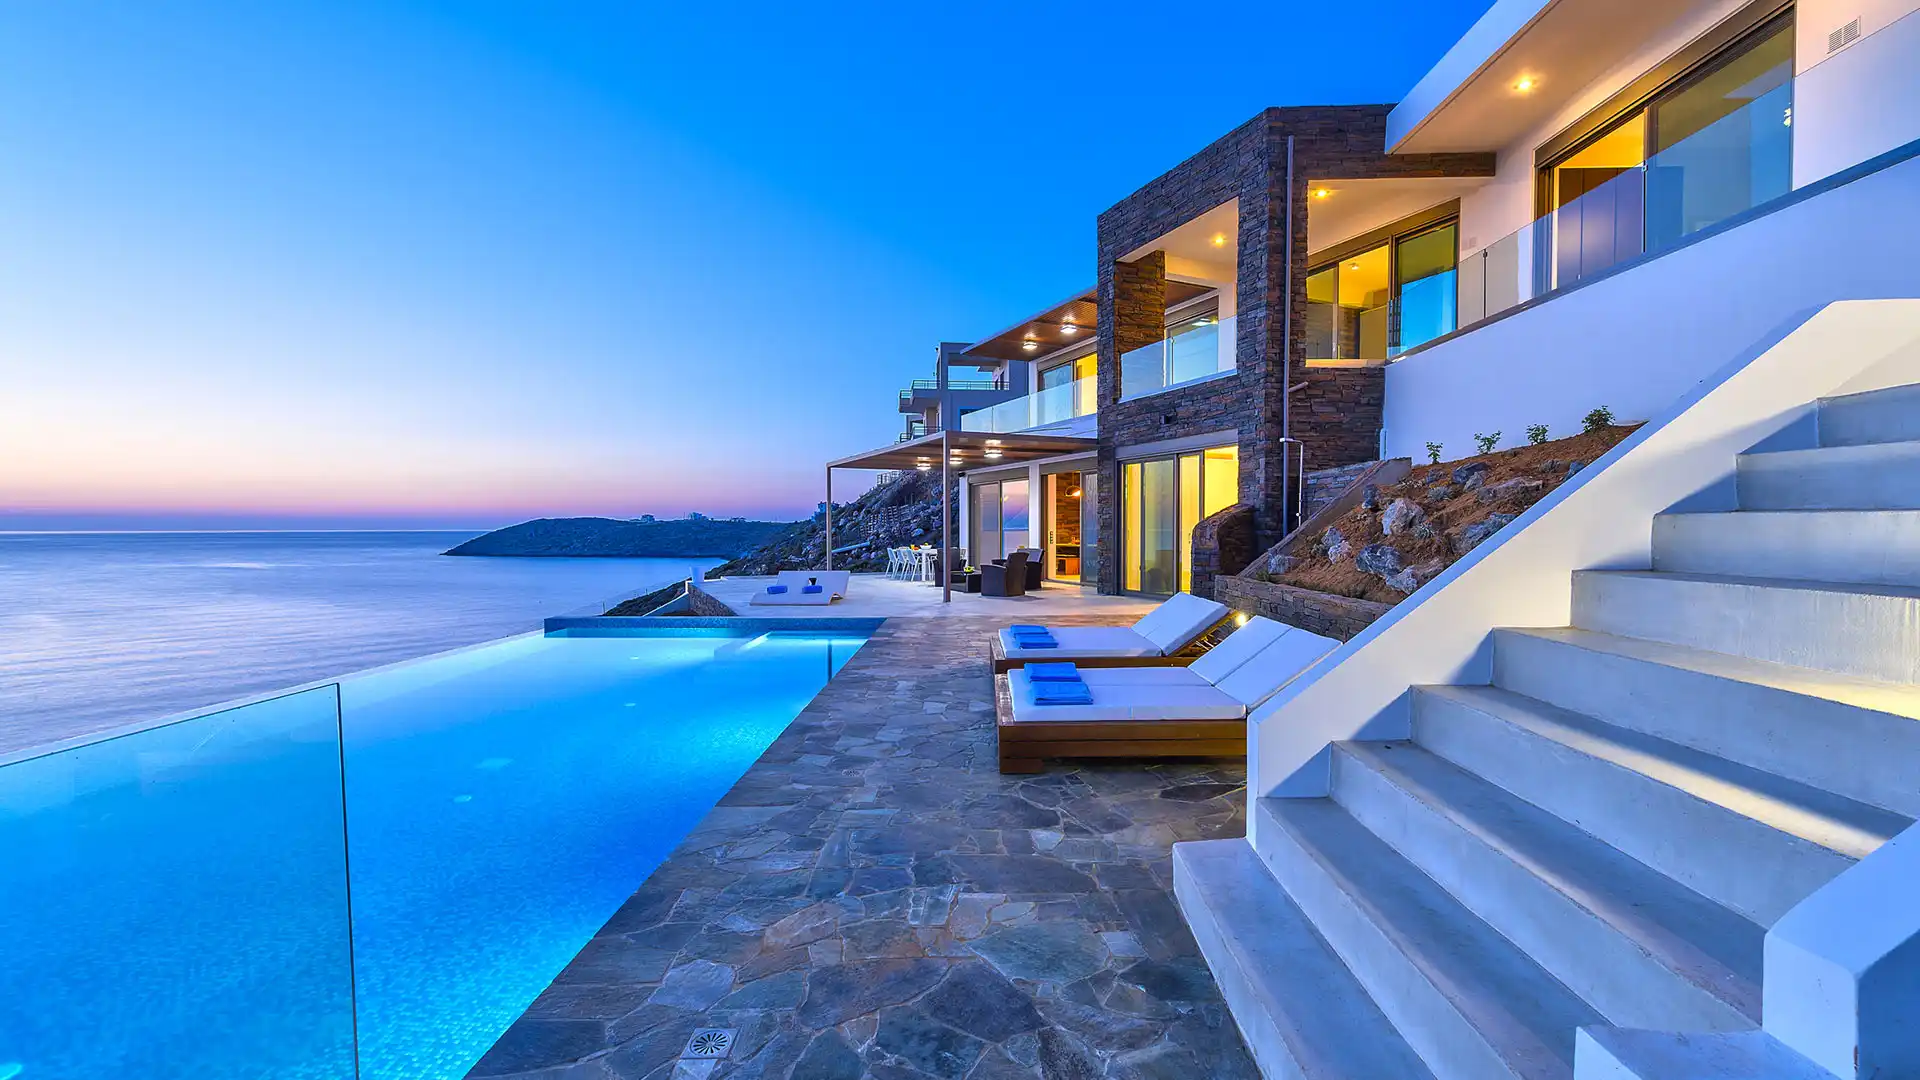 Seaside Villa Villa Sea Luxury Sea Luxury House